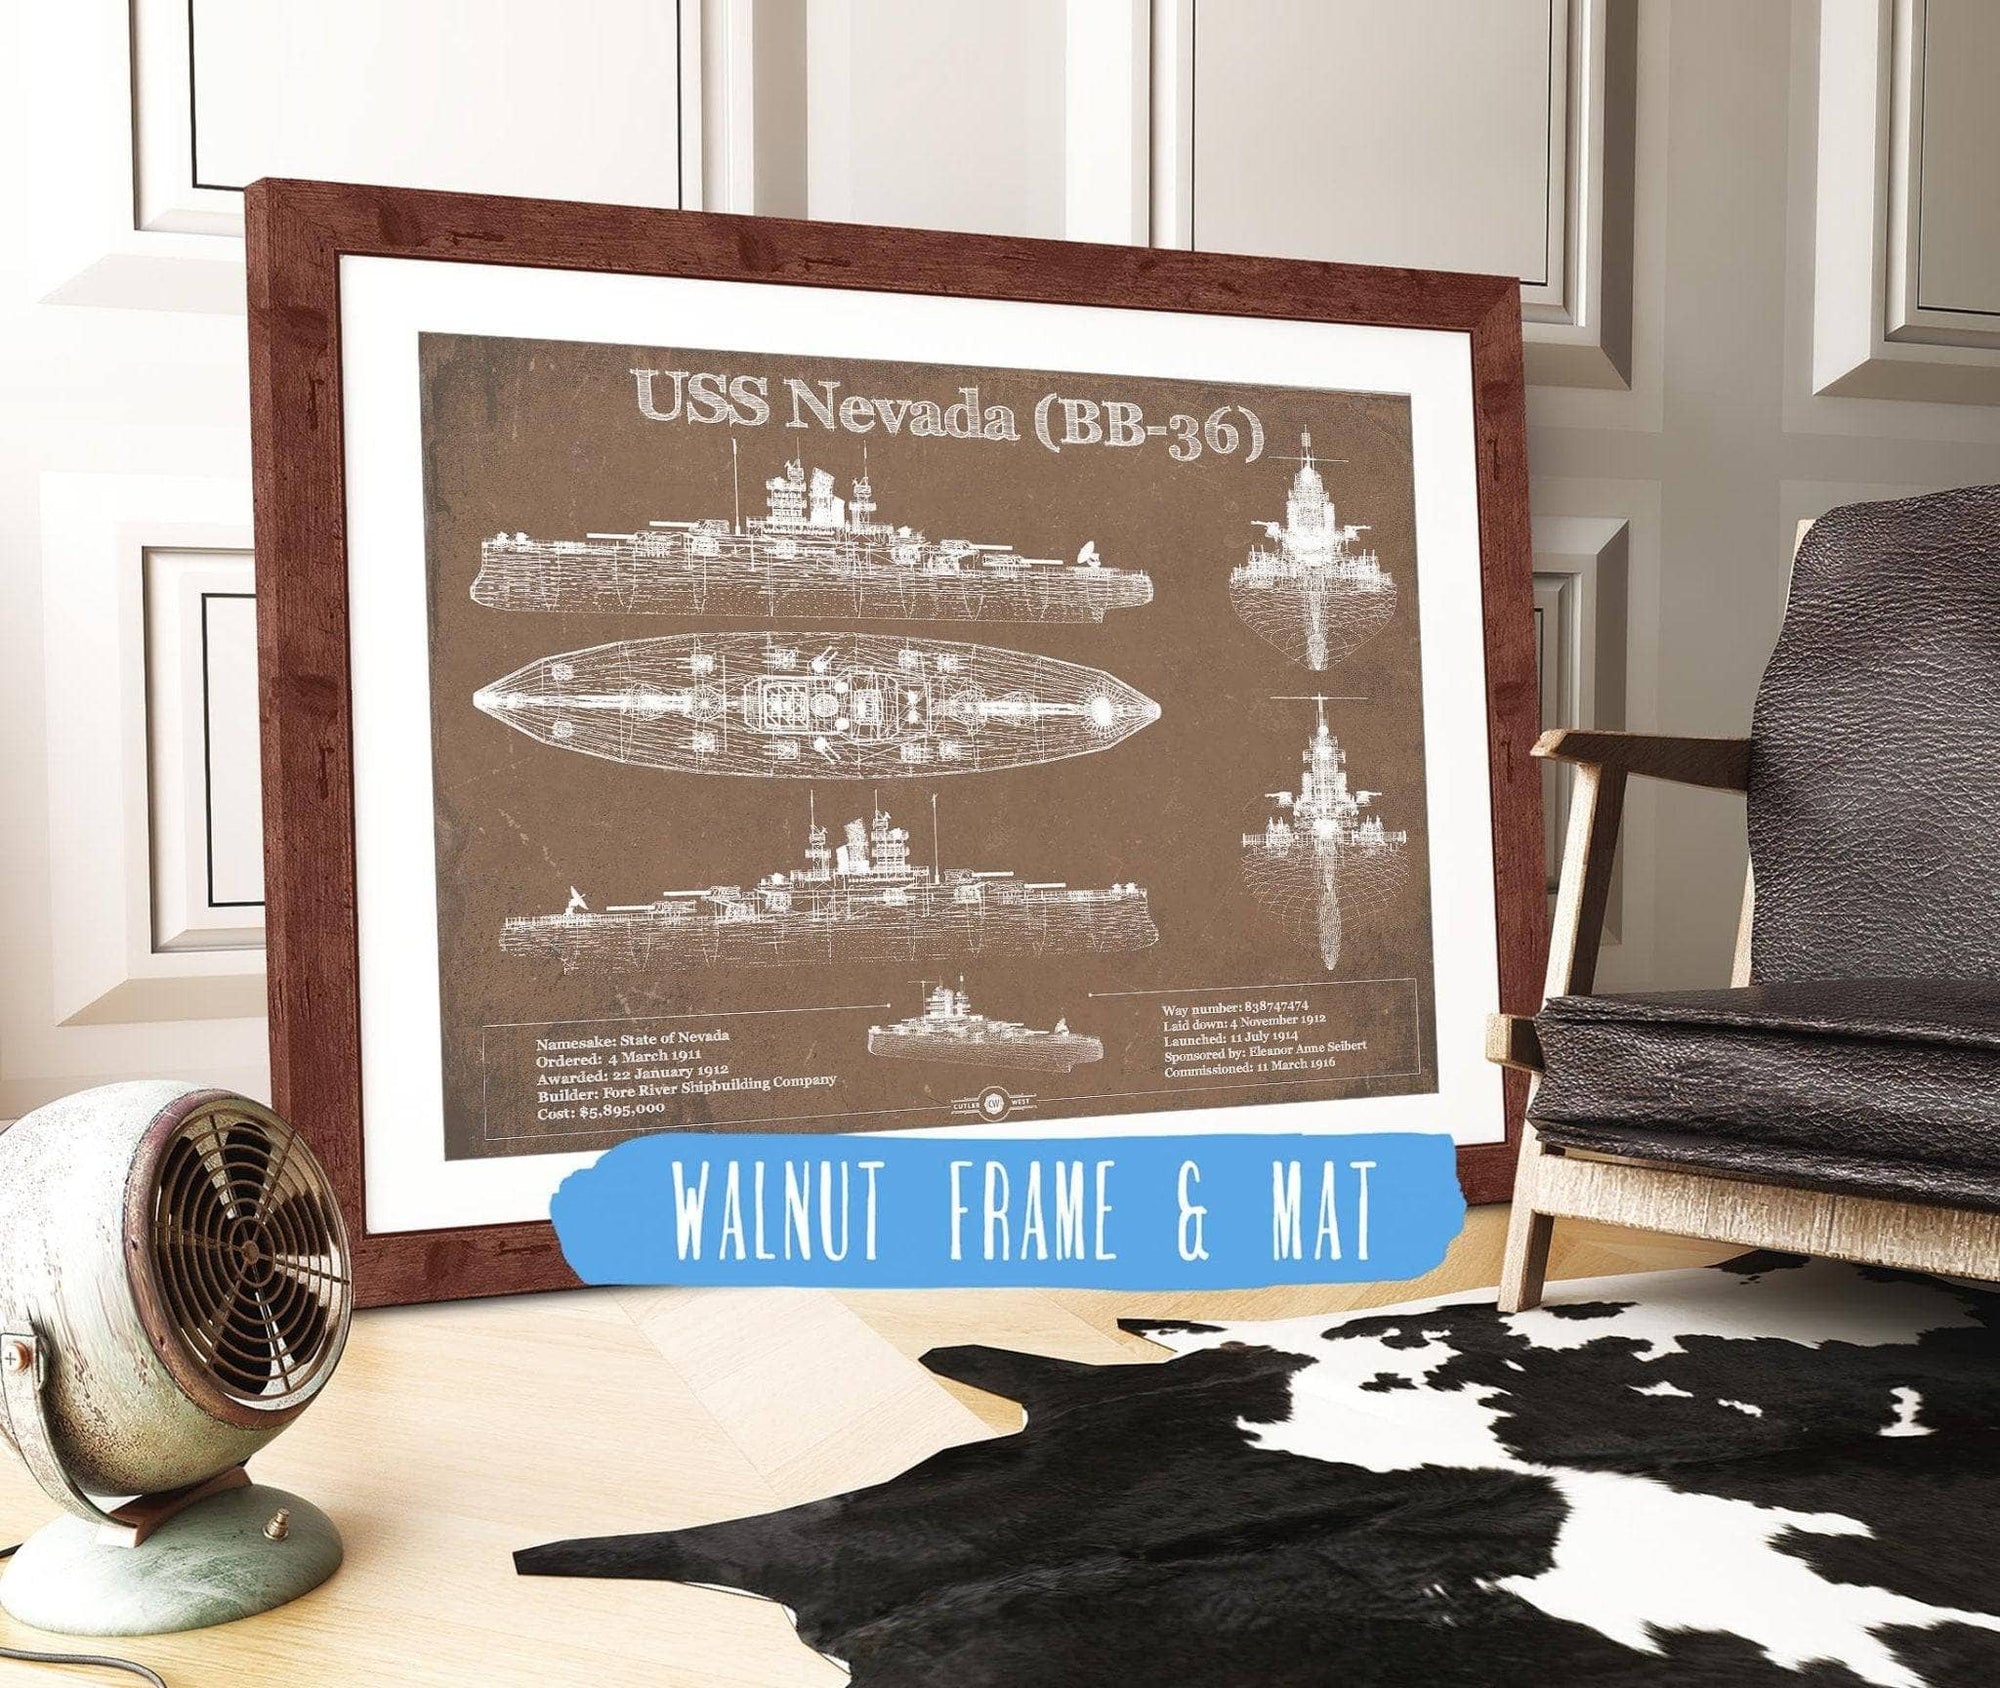 Cutler West Naval Military 14" x 11" / Walnut Frame & Mat USS Nevada (BB-36) Battleship Blueprint Original Military Wall Art - Customizable 933350082_27506